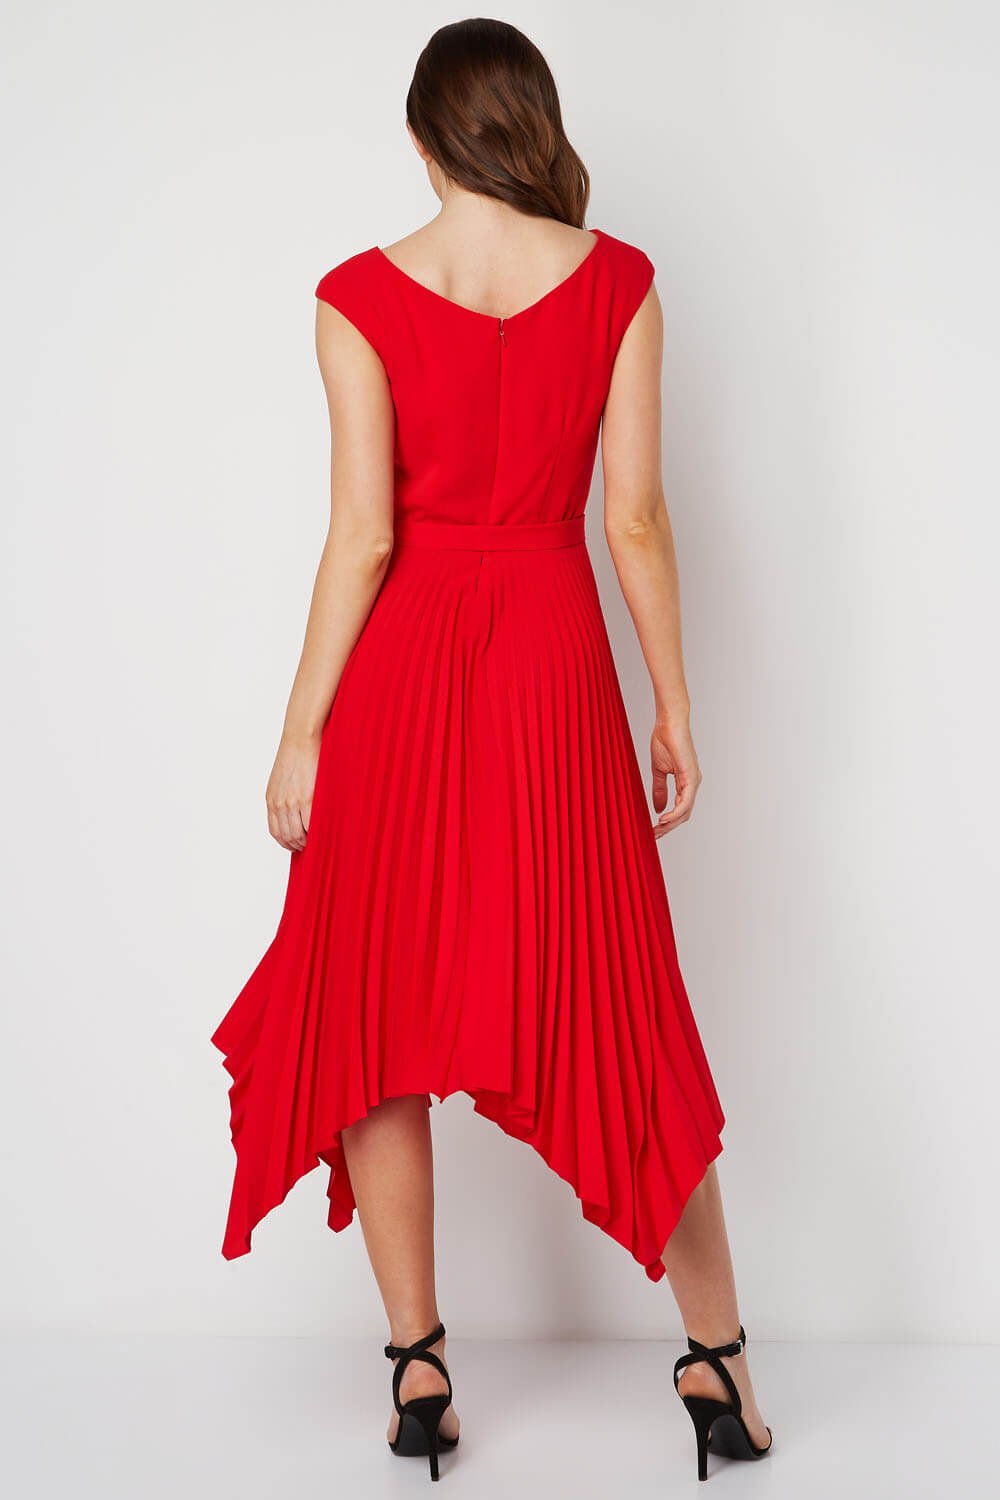 Red Pleated Hanky Hem Midi Dress, Image 2 of 5